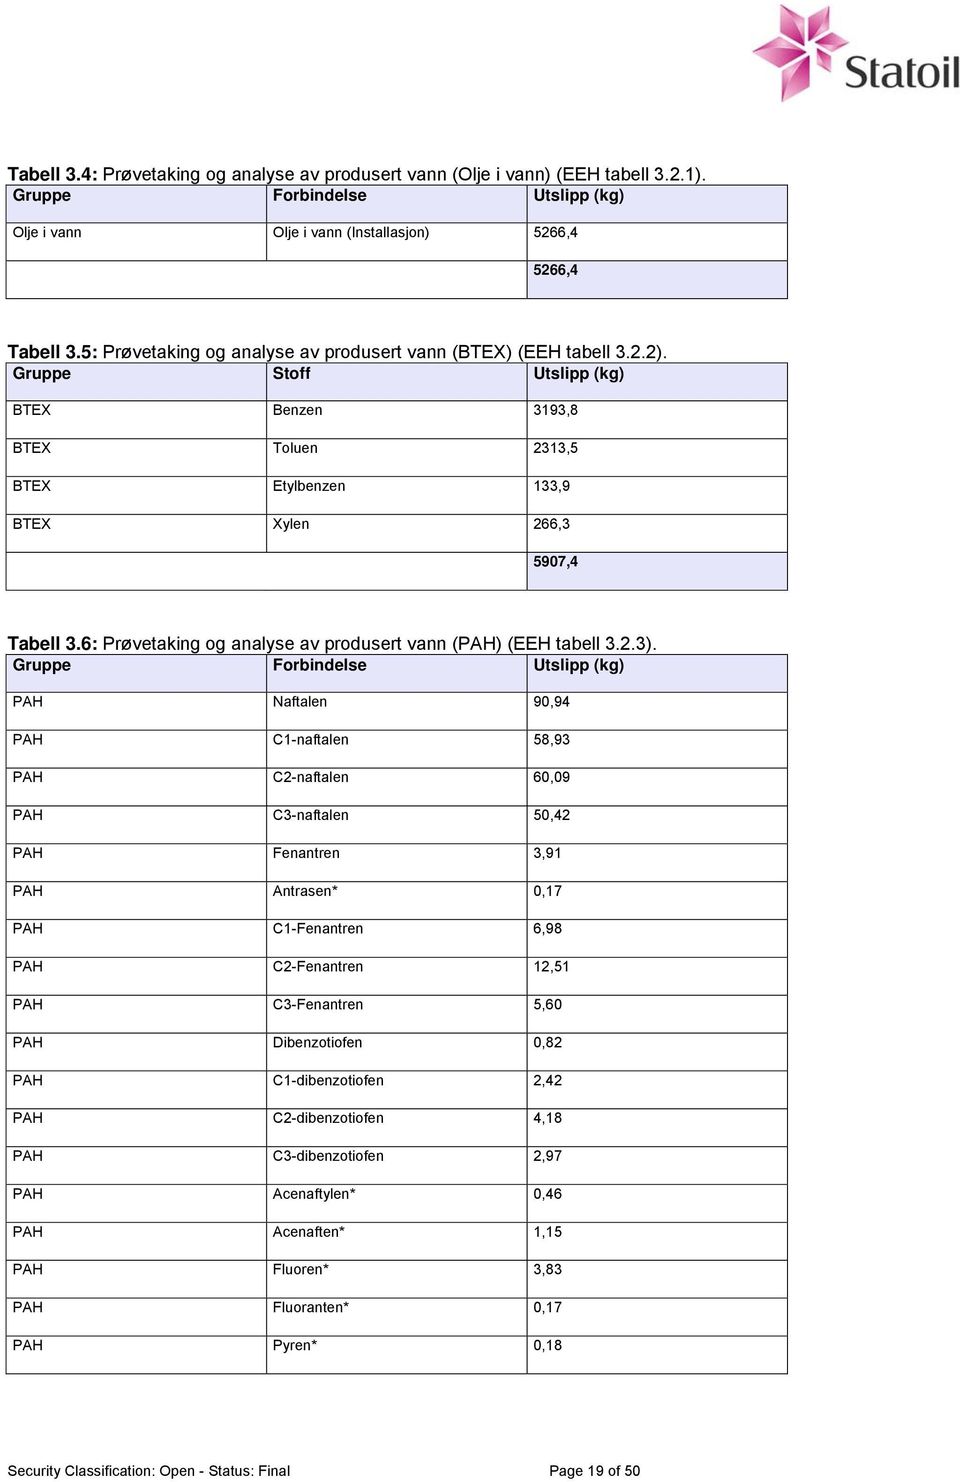 6: Prøvetaking og analyse av produsert vann (PAH) (EEH tabell 3.2.3).